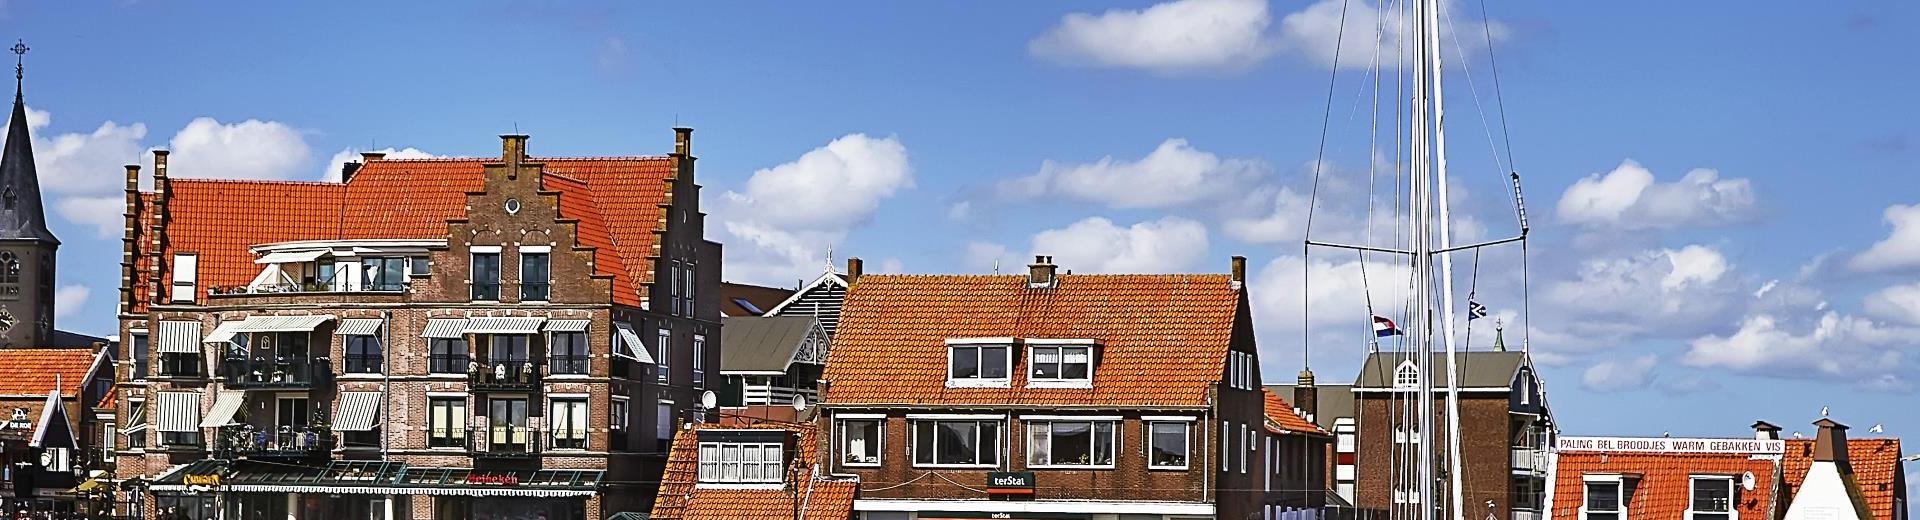 Ferienwohnungen & Ferienhäuser für Urlaub in Friesland - Casamundo